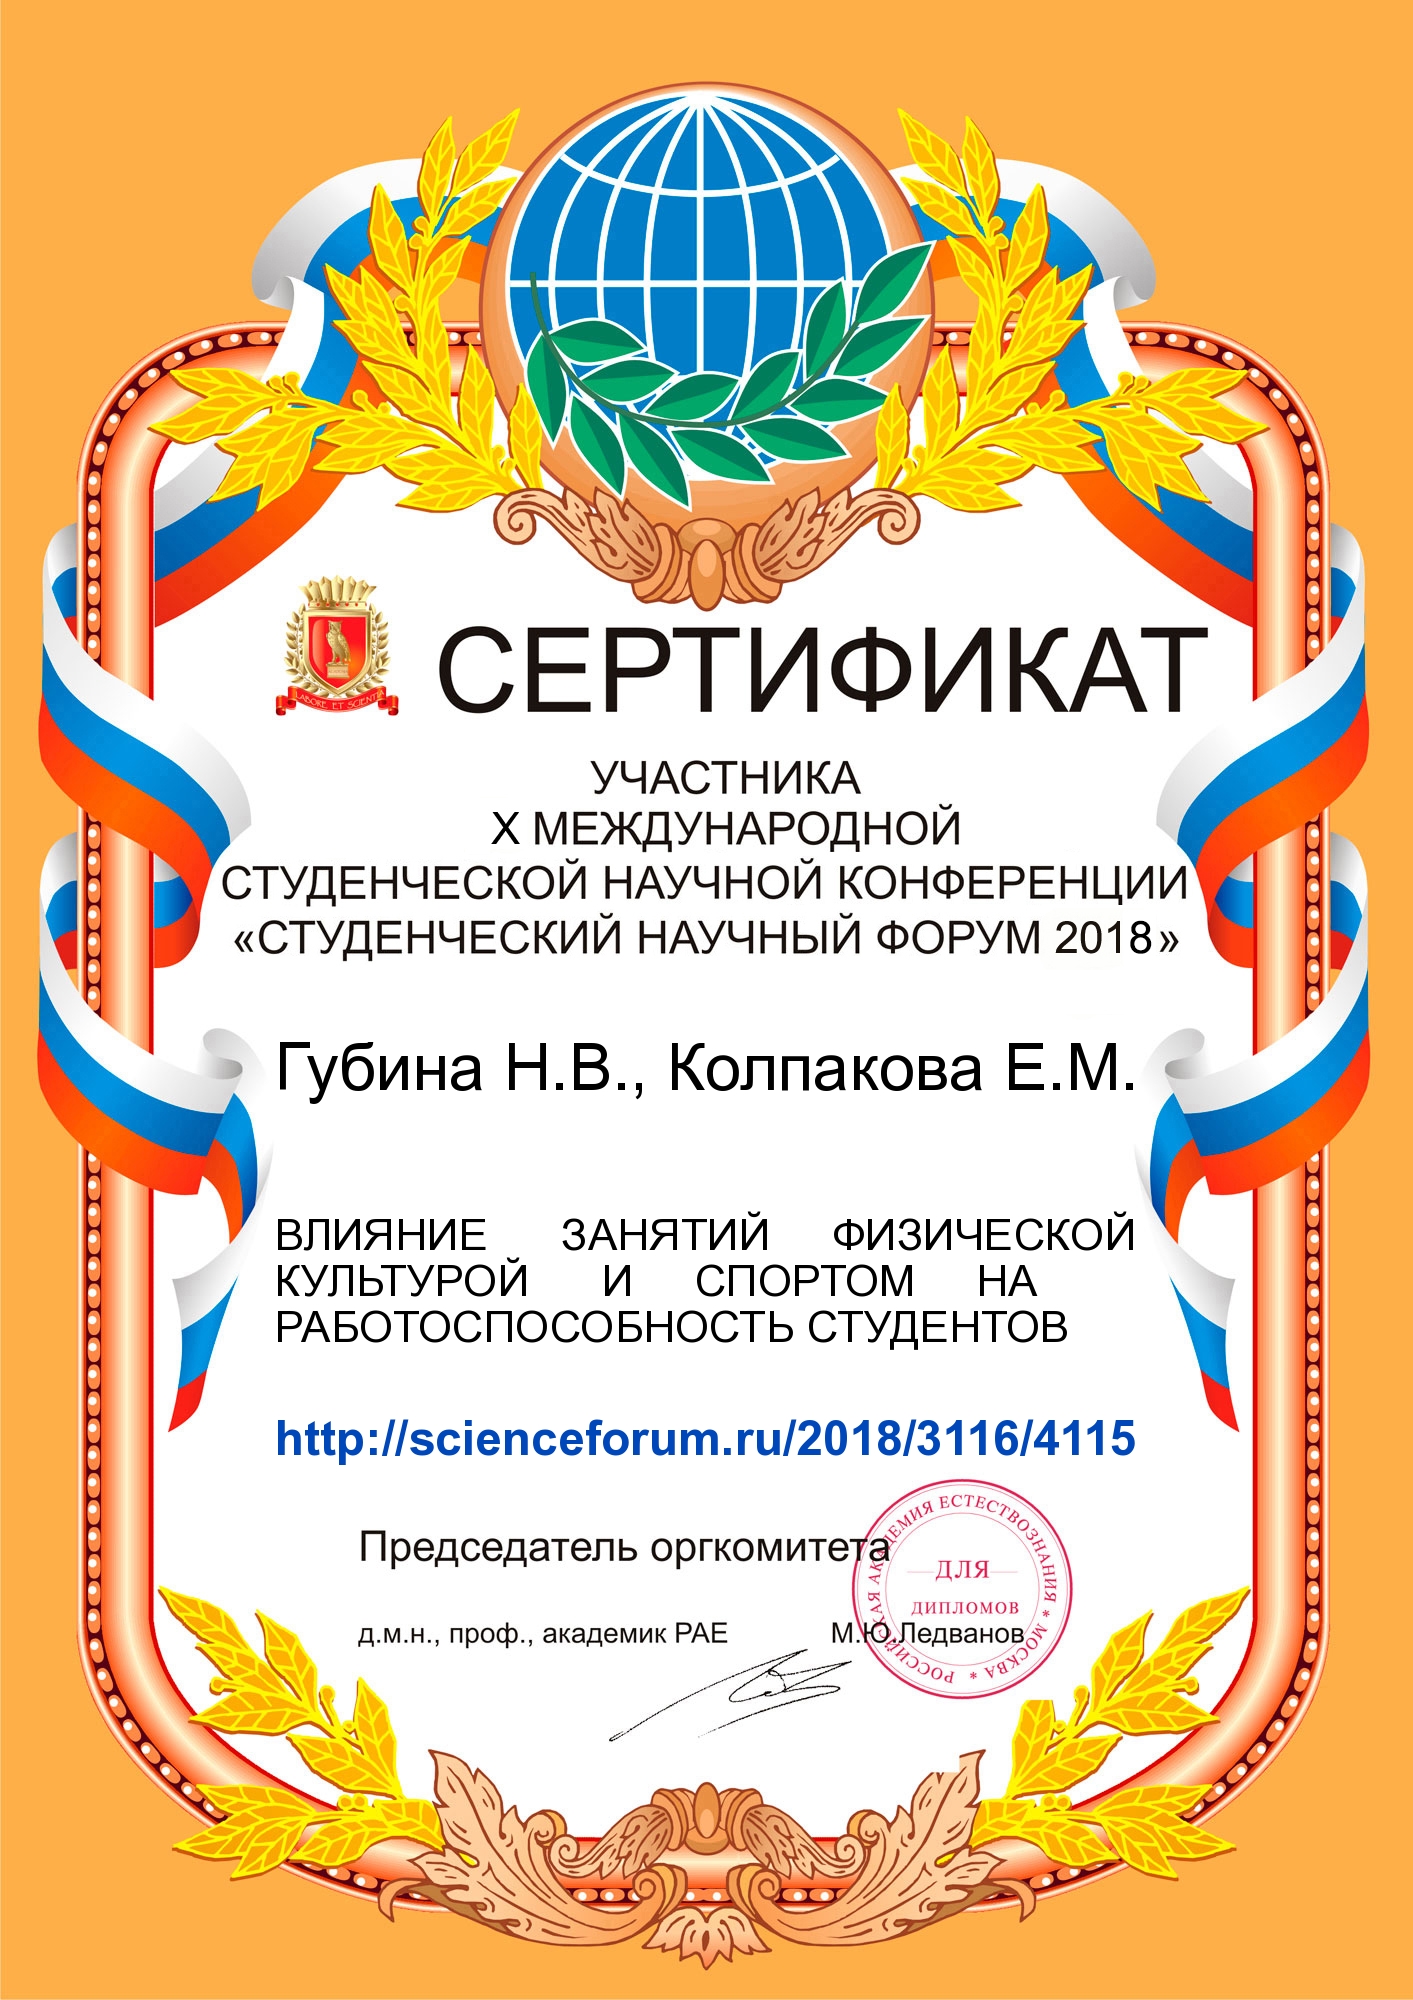 Сертификат участника X международной студенческой научной конференции "Студенческий научный форум 2018"